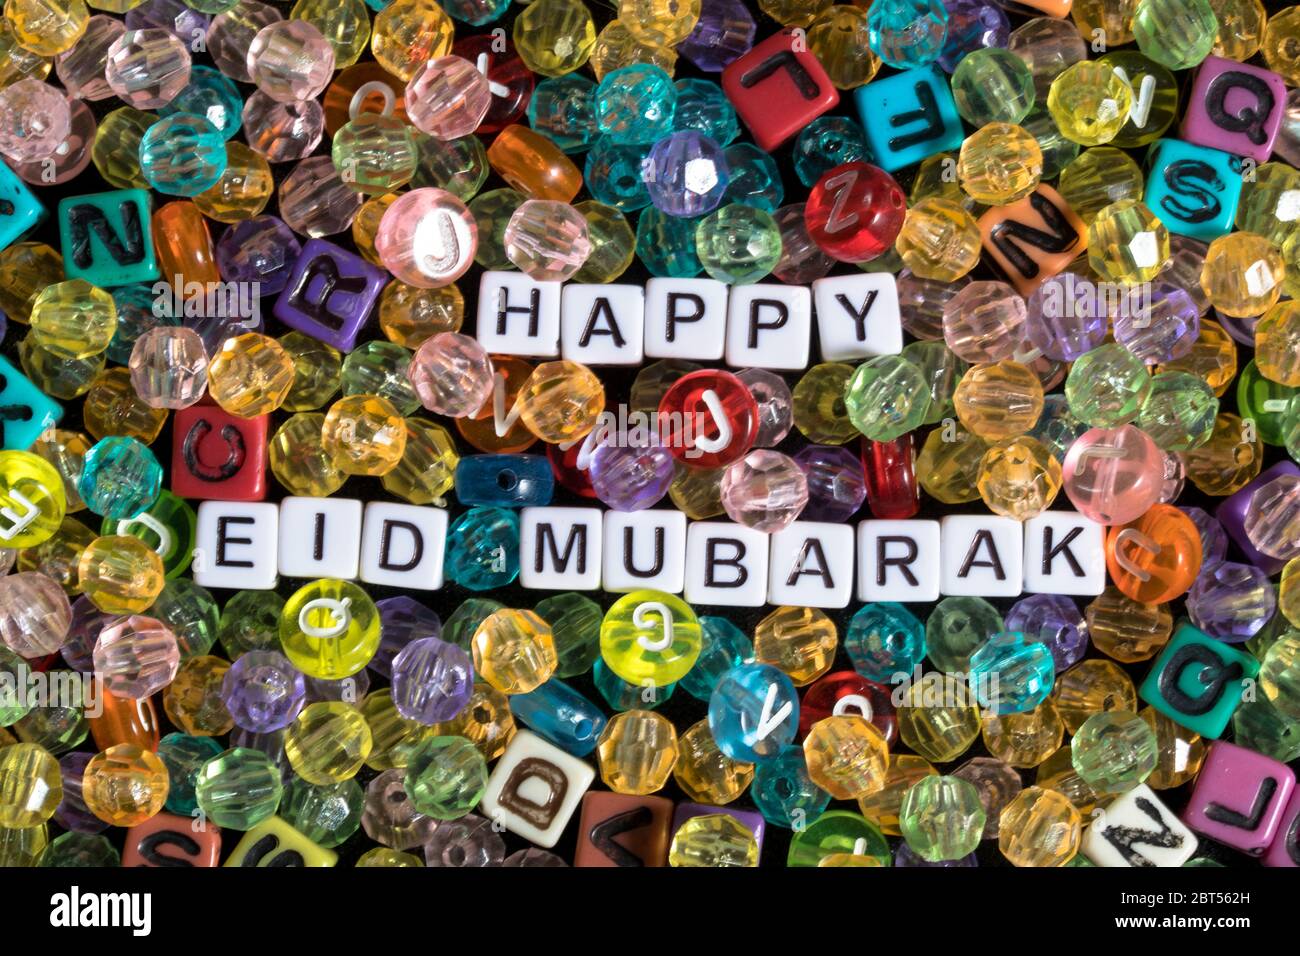 Frase de Mubarrak Eid feliz rodeada de cuentas y bloques del alfabeto Foto de stock